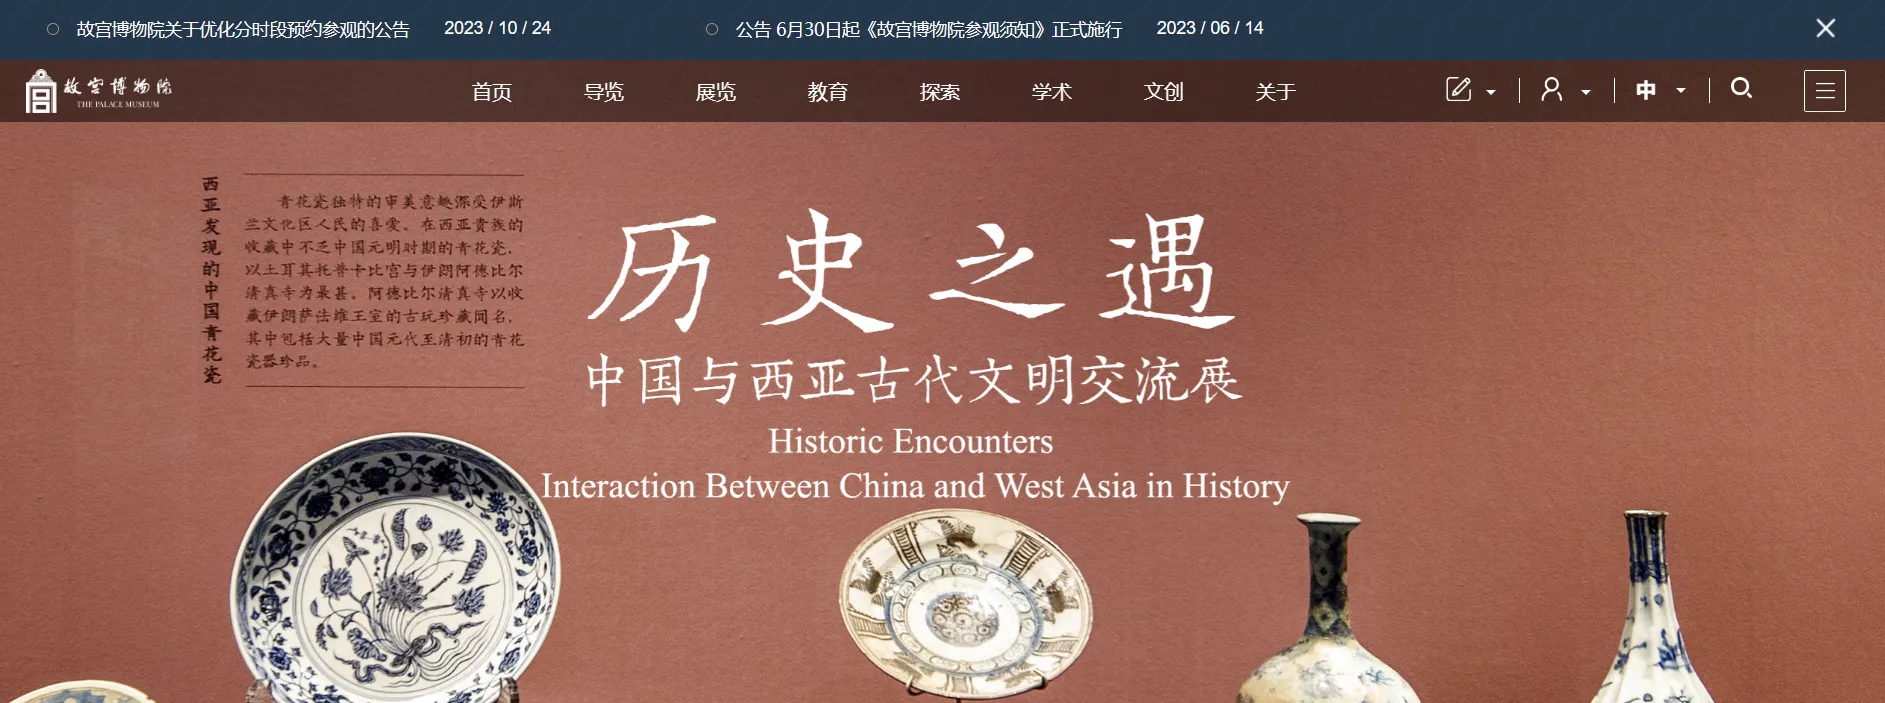 比如故宫博物院网站首页，把艺术字体用在落地页图片上